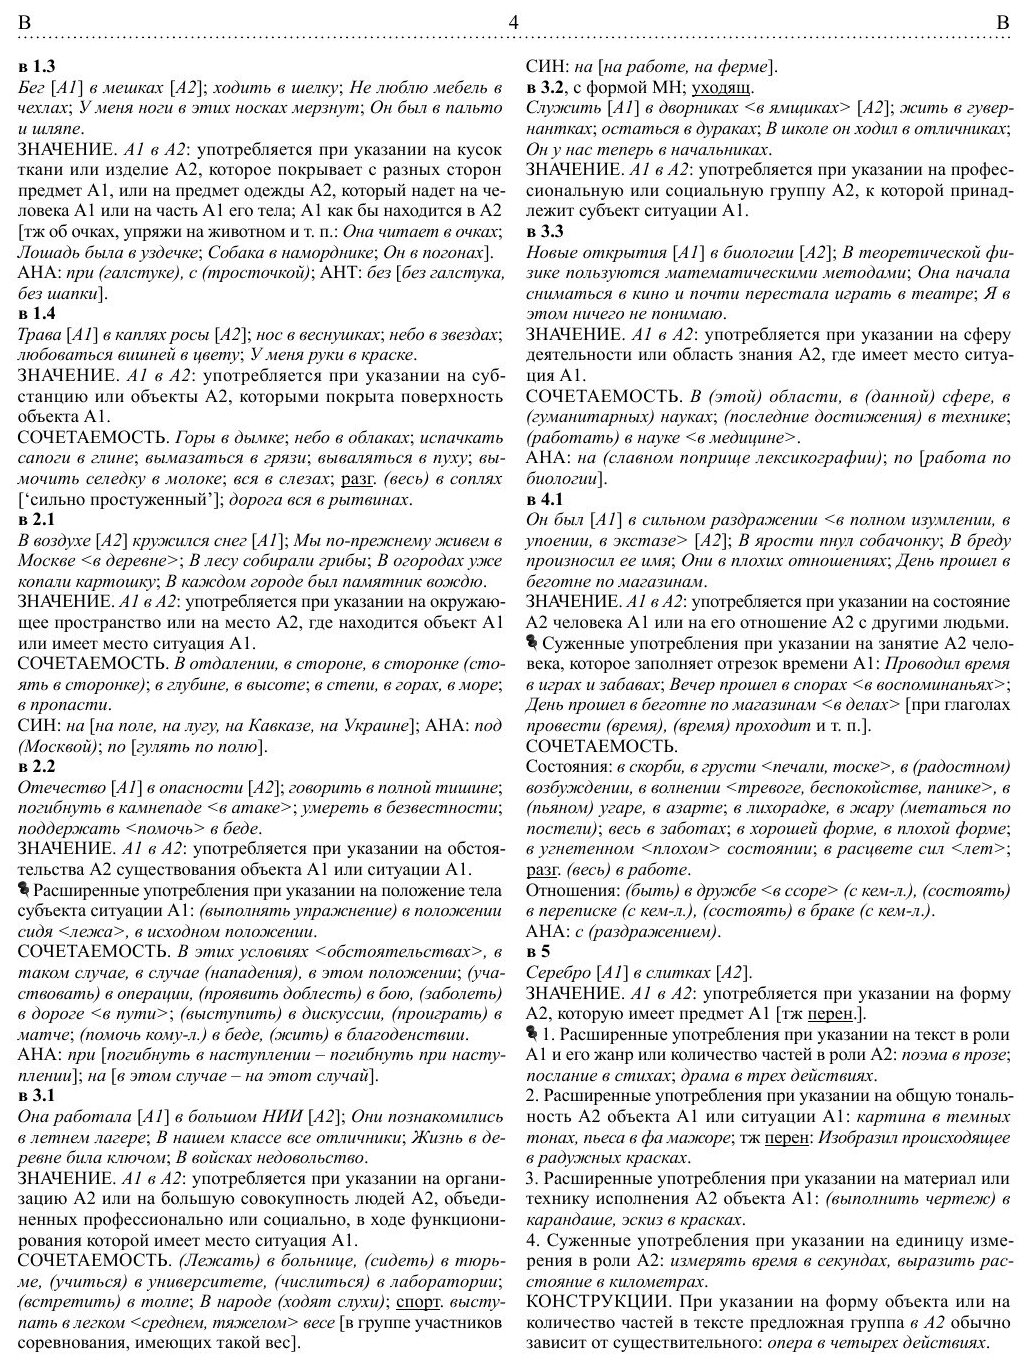 Активный словарь русского языка. Том 2. В-Г - фото №6